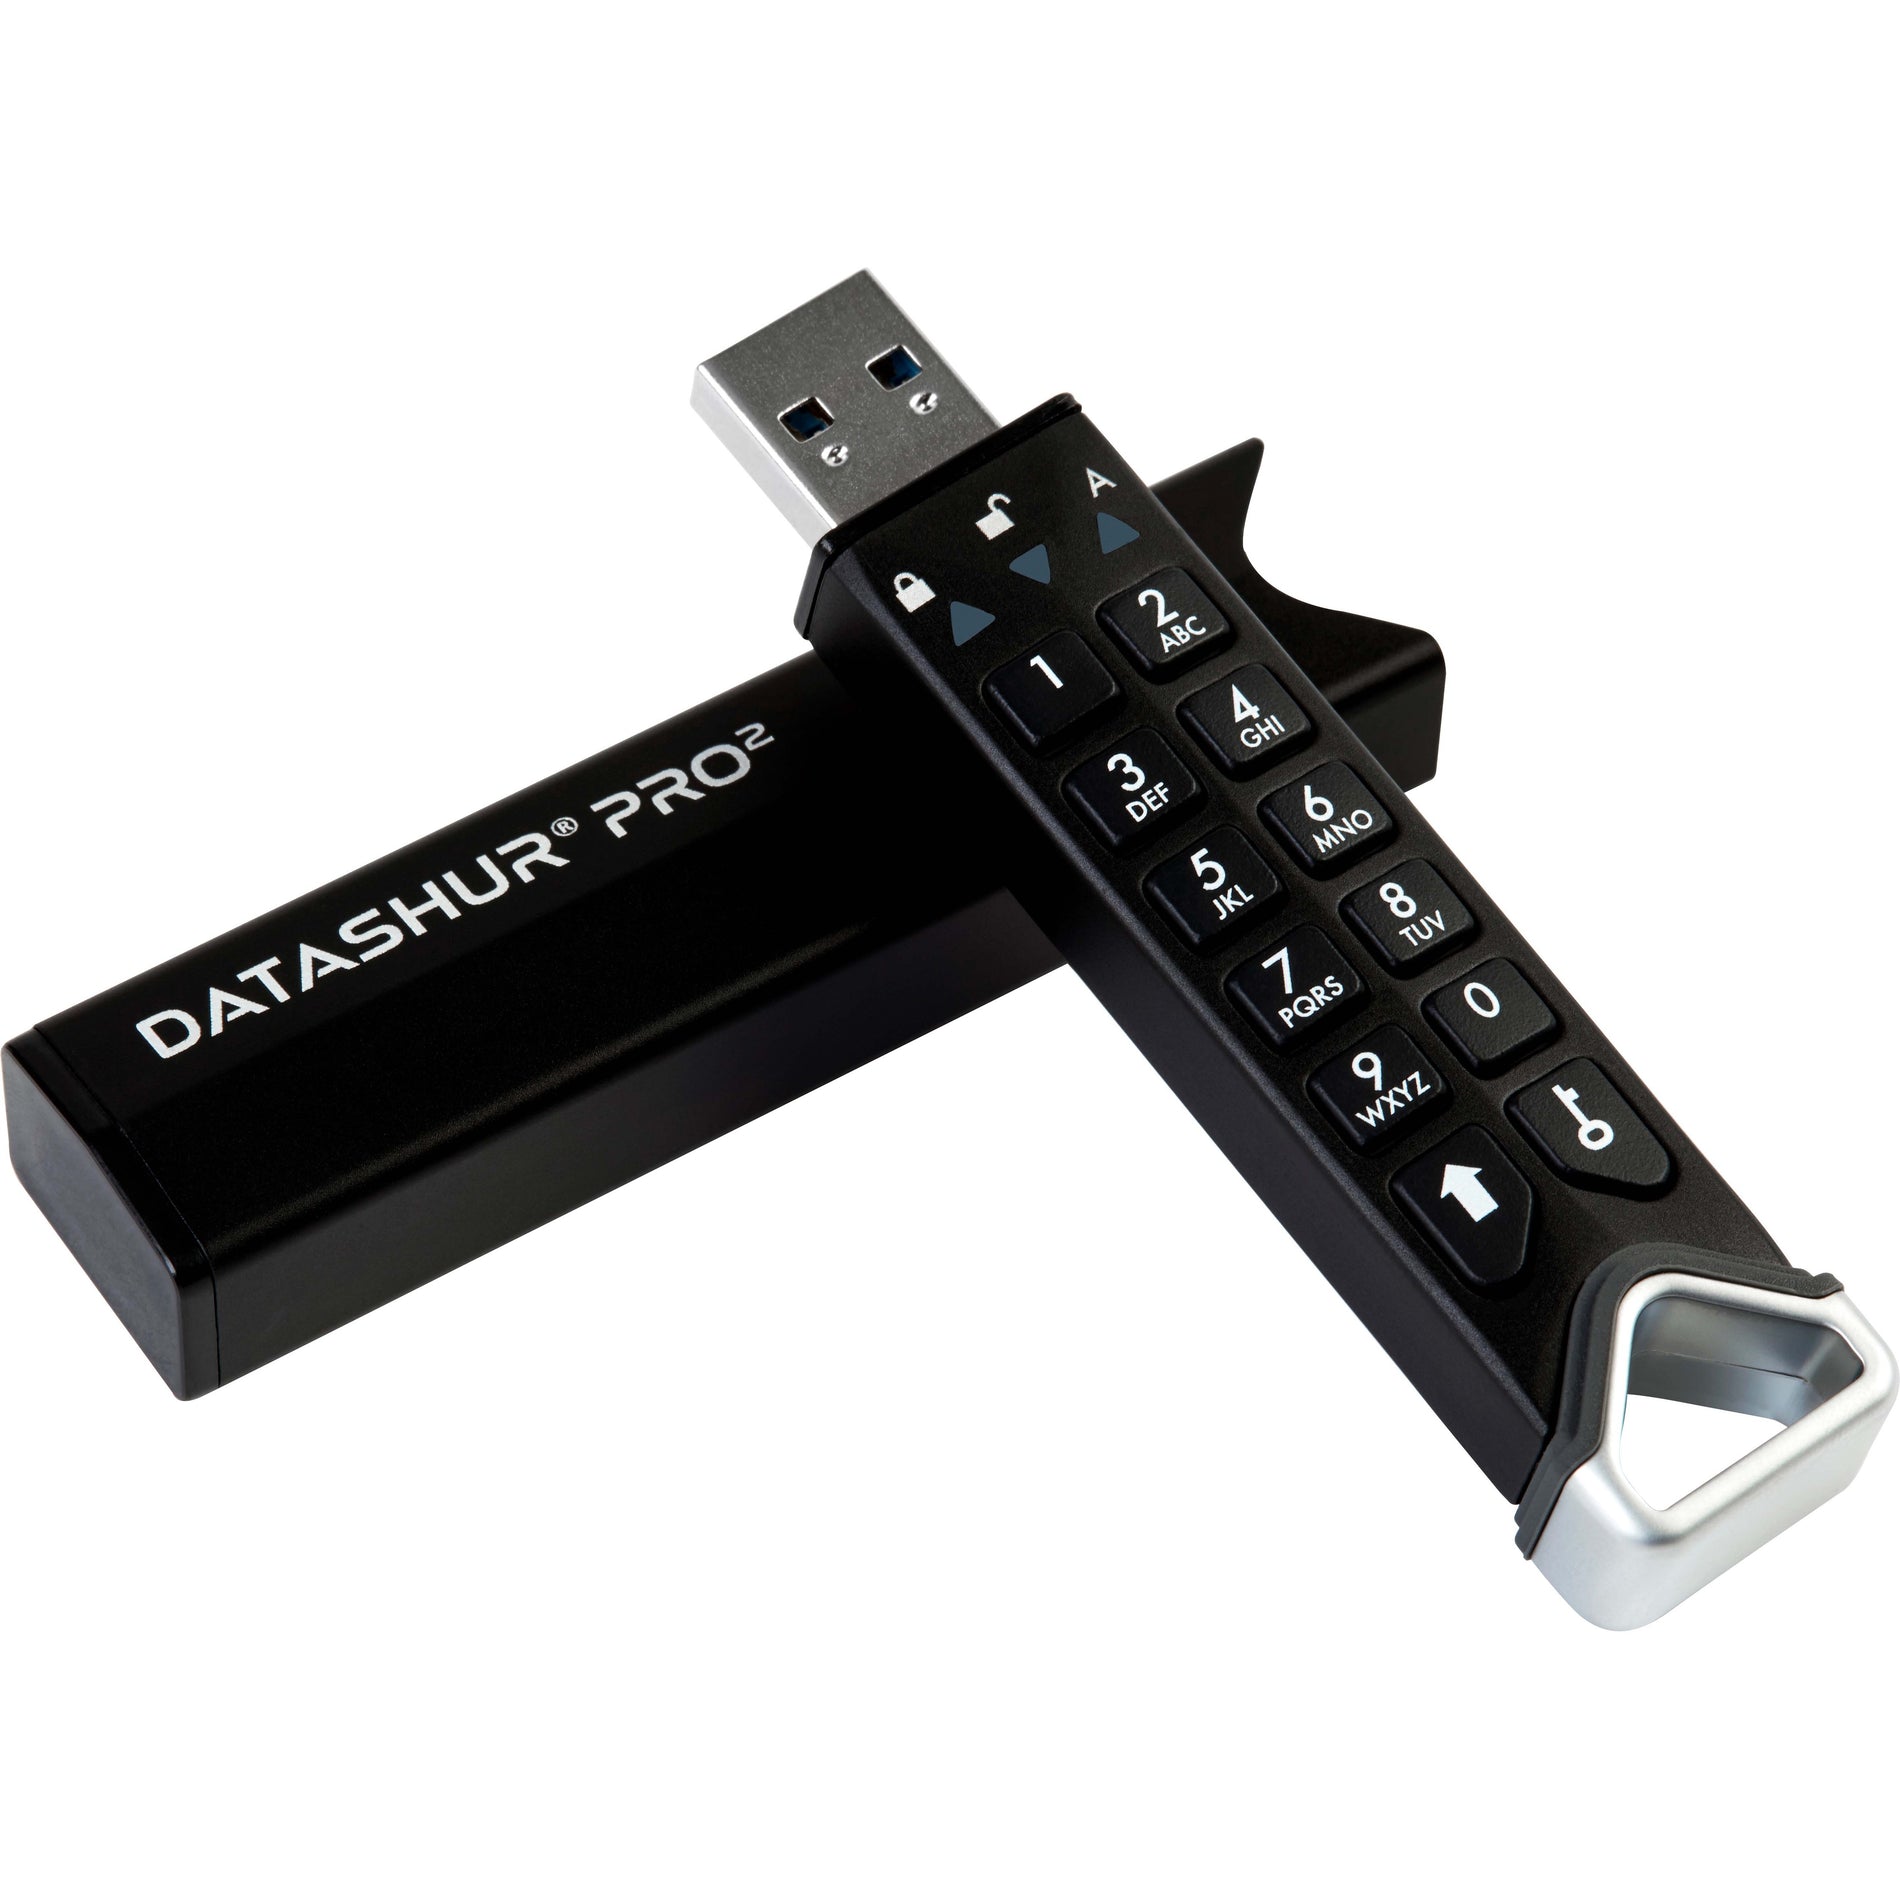 iStorage IS-FL-DP2-256-256 datAshur PRO² 256Go USB 3.2 (Gen 1) Type A Clé USB Sécurisé Certifié FIPS 140-2 Niveau 3 Protégé par Mot de Passe Résistant à la Poussière et à l'Eau